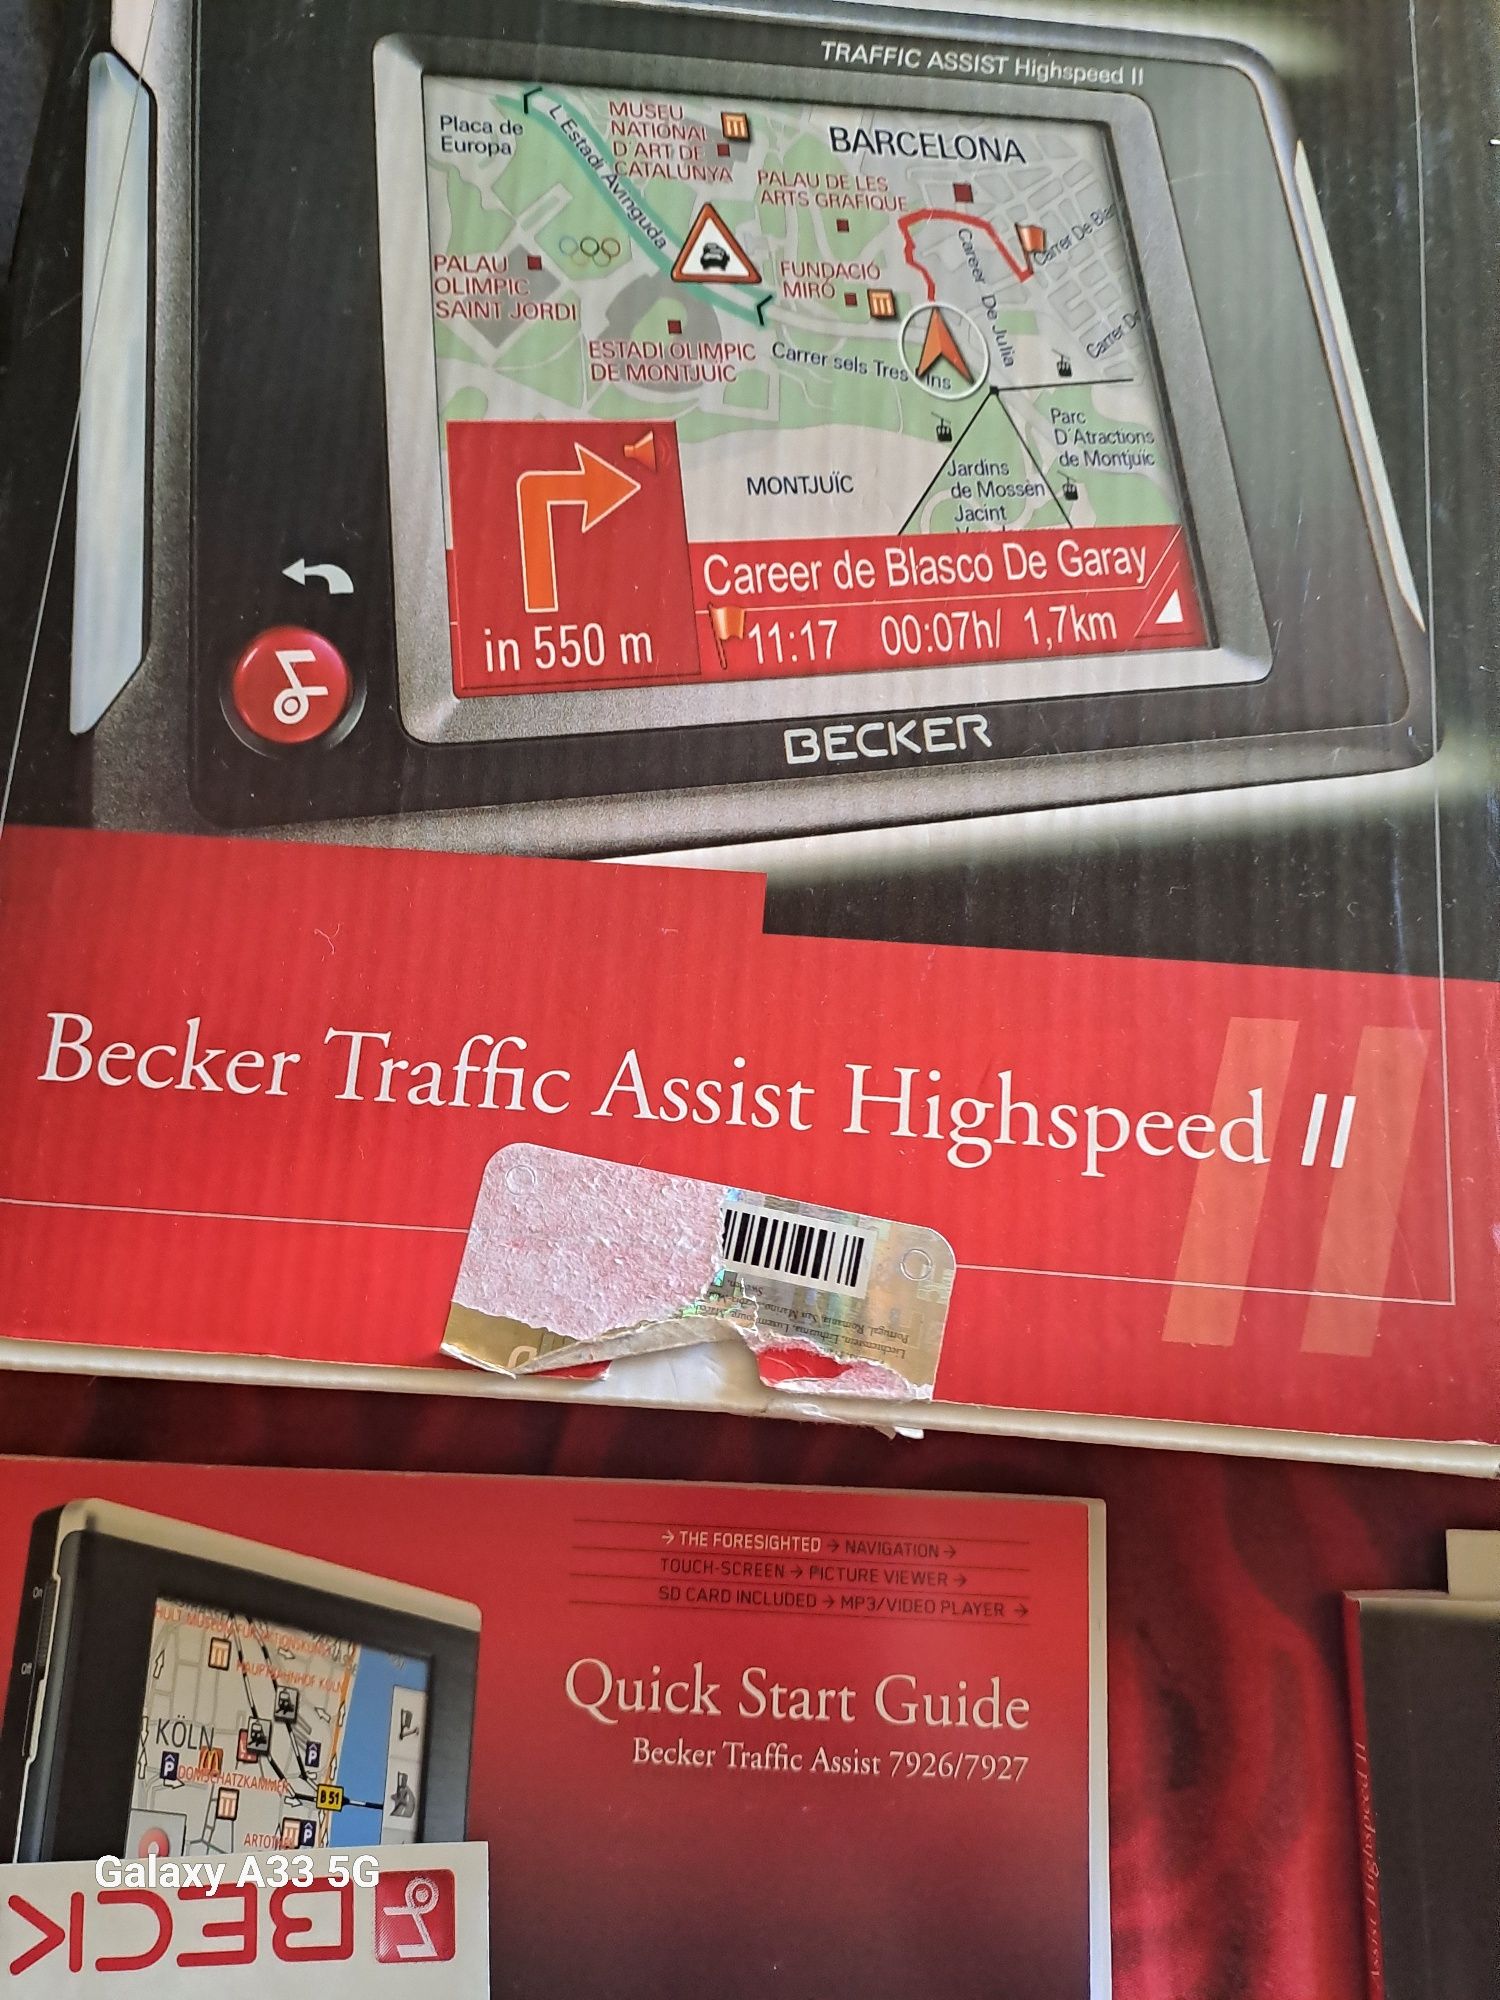 Becker traffic assist highspeed 2